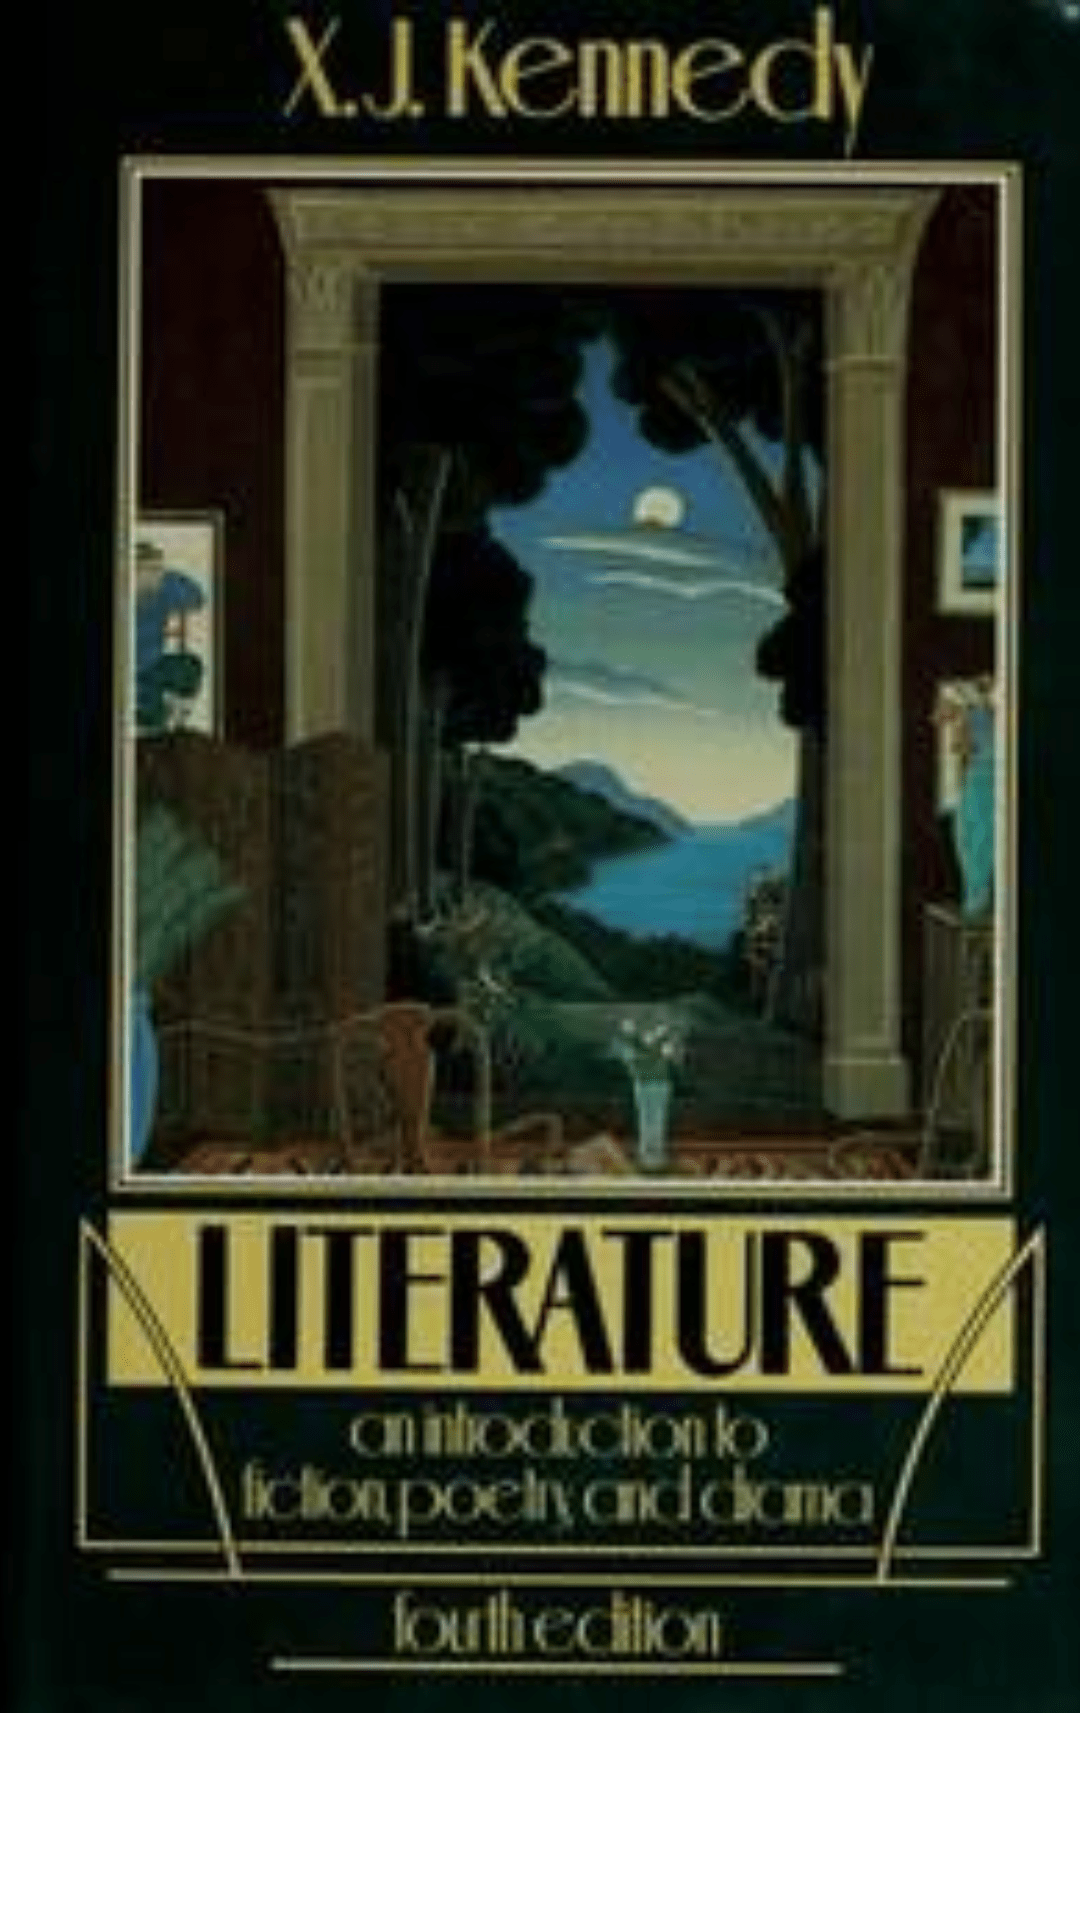 Literature:4th edition